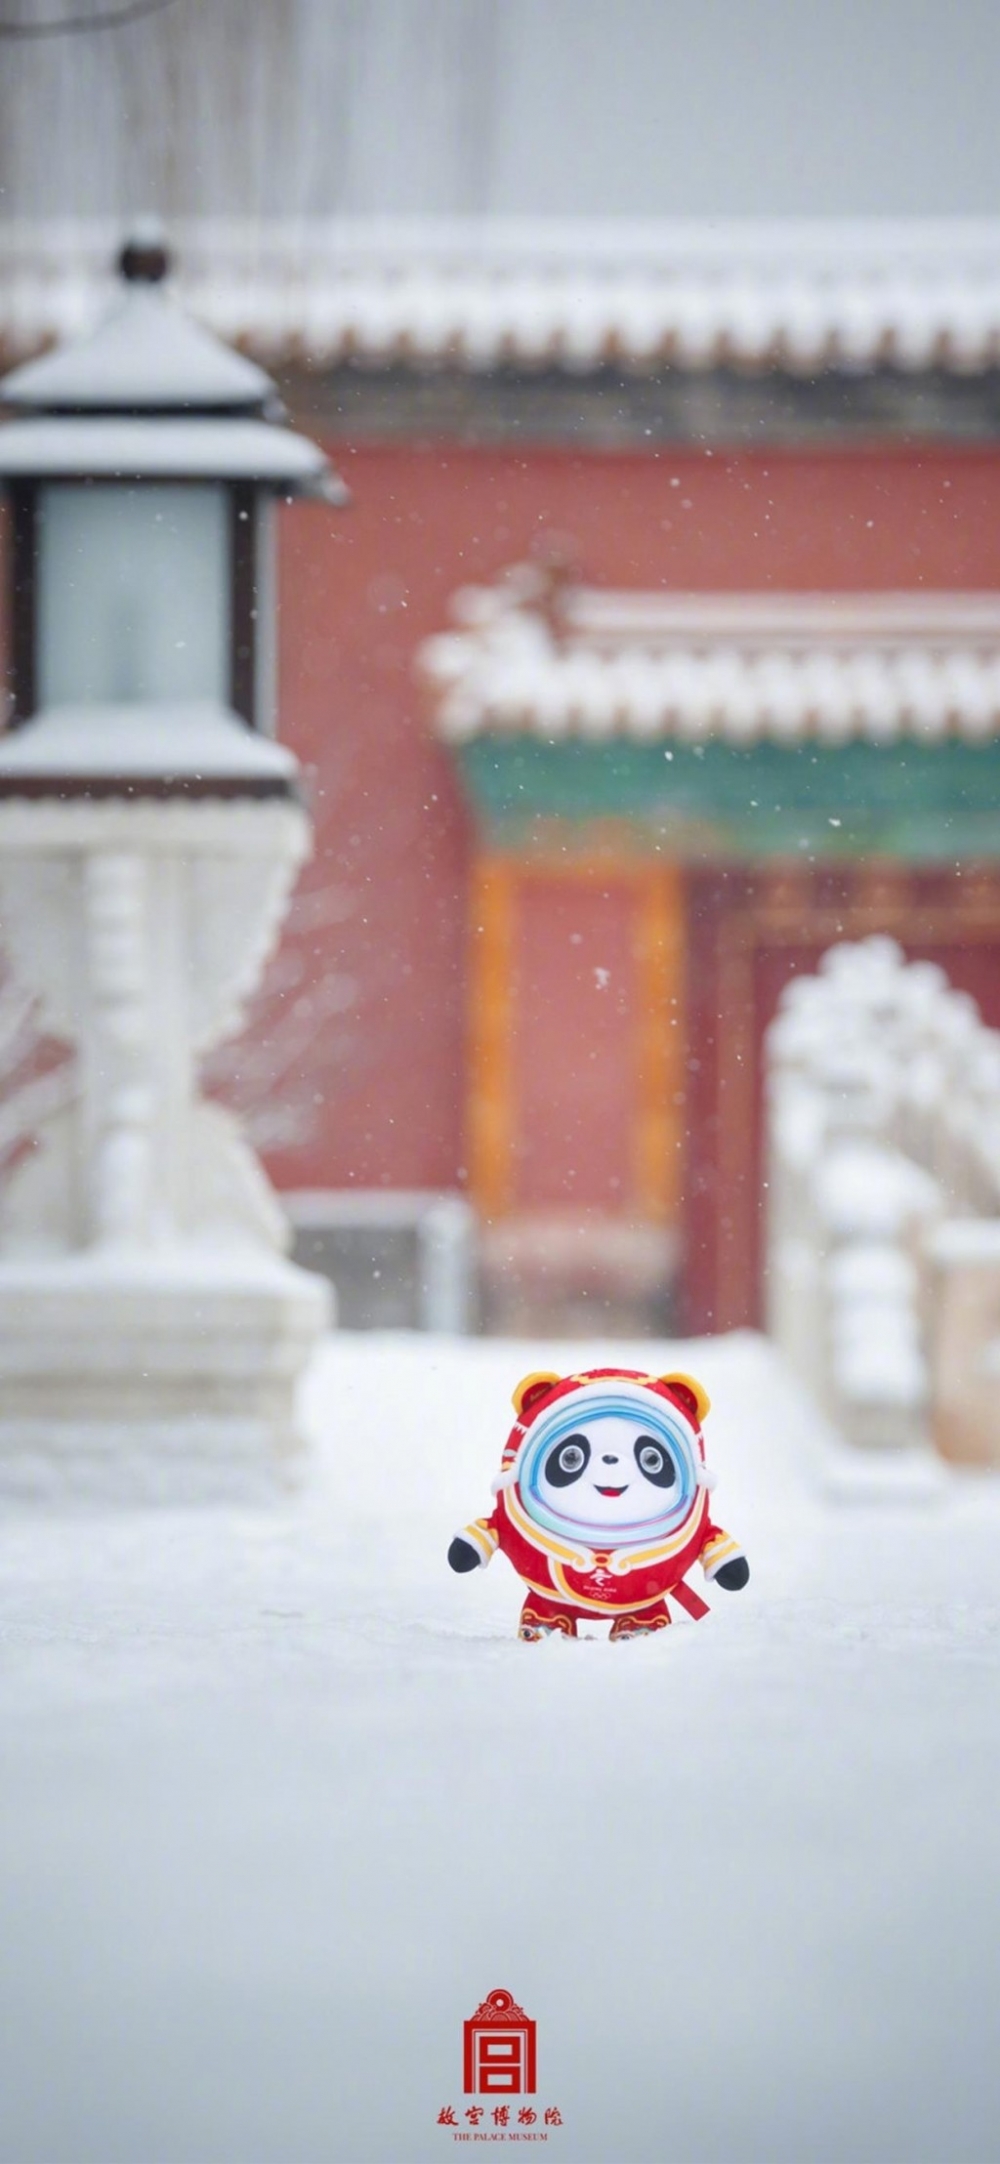 北京冬奥会冰墩墩故宫红墙手机壁纸